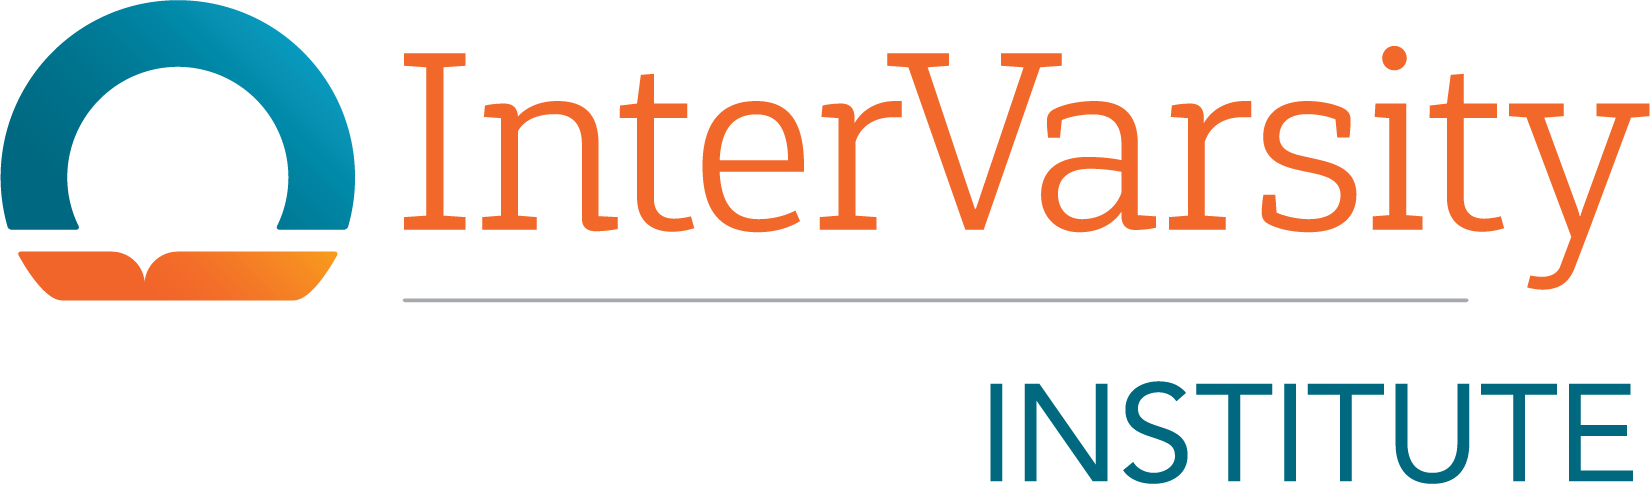 InterVarsity Institute